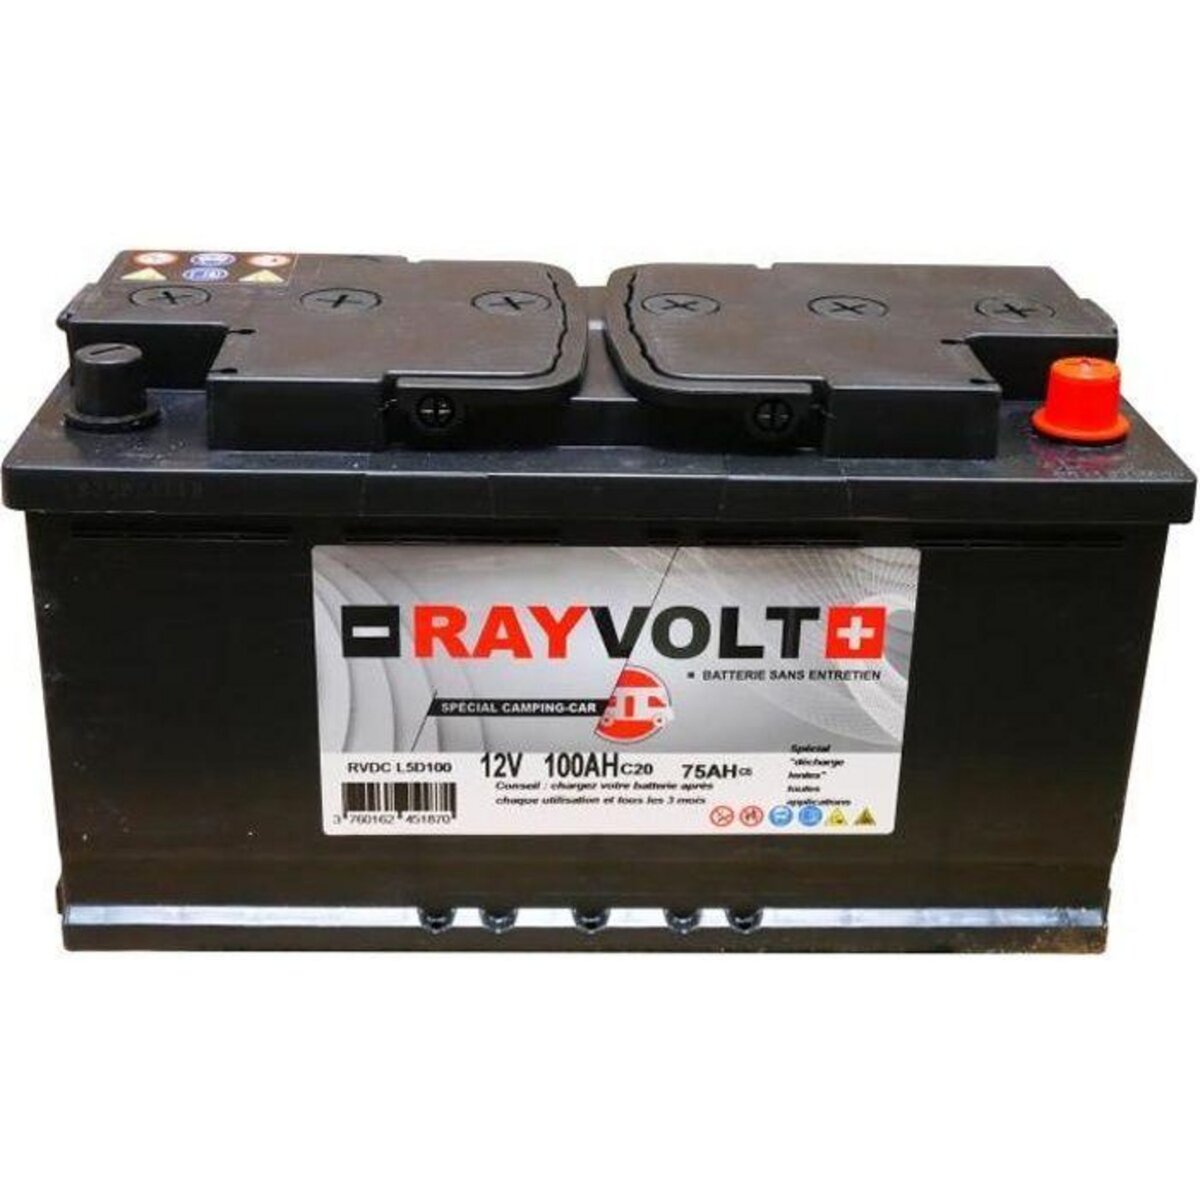 Batterie a décharge lente RAYVOLT 12V 100AH pas cher 